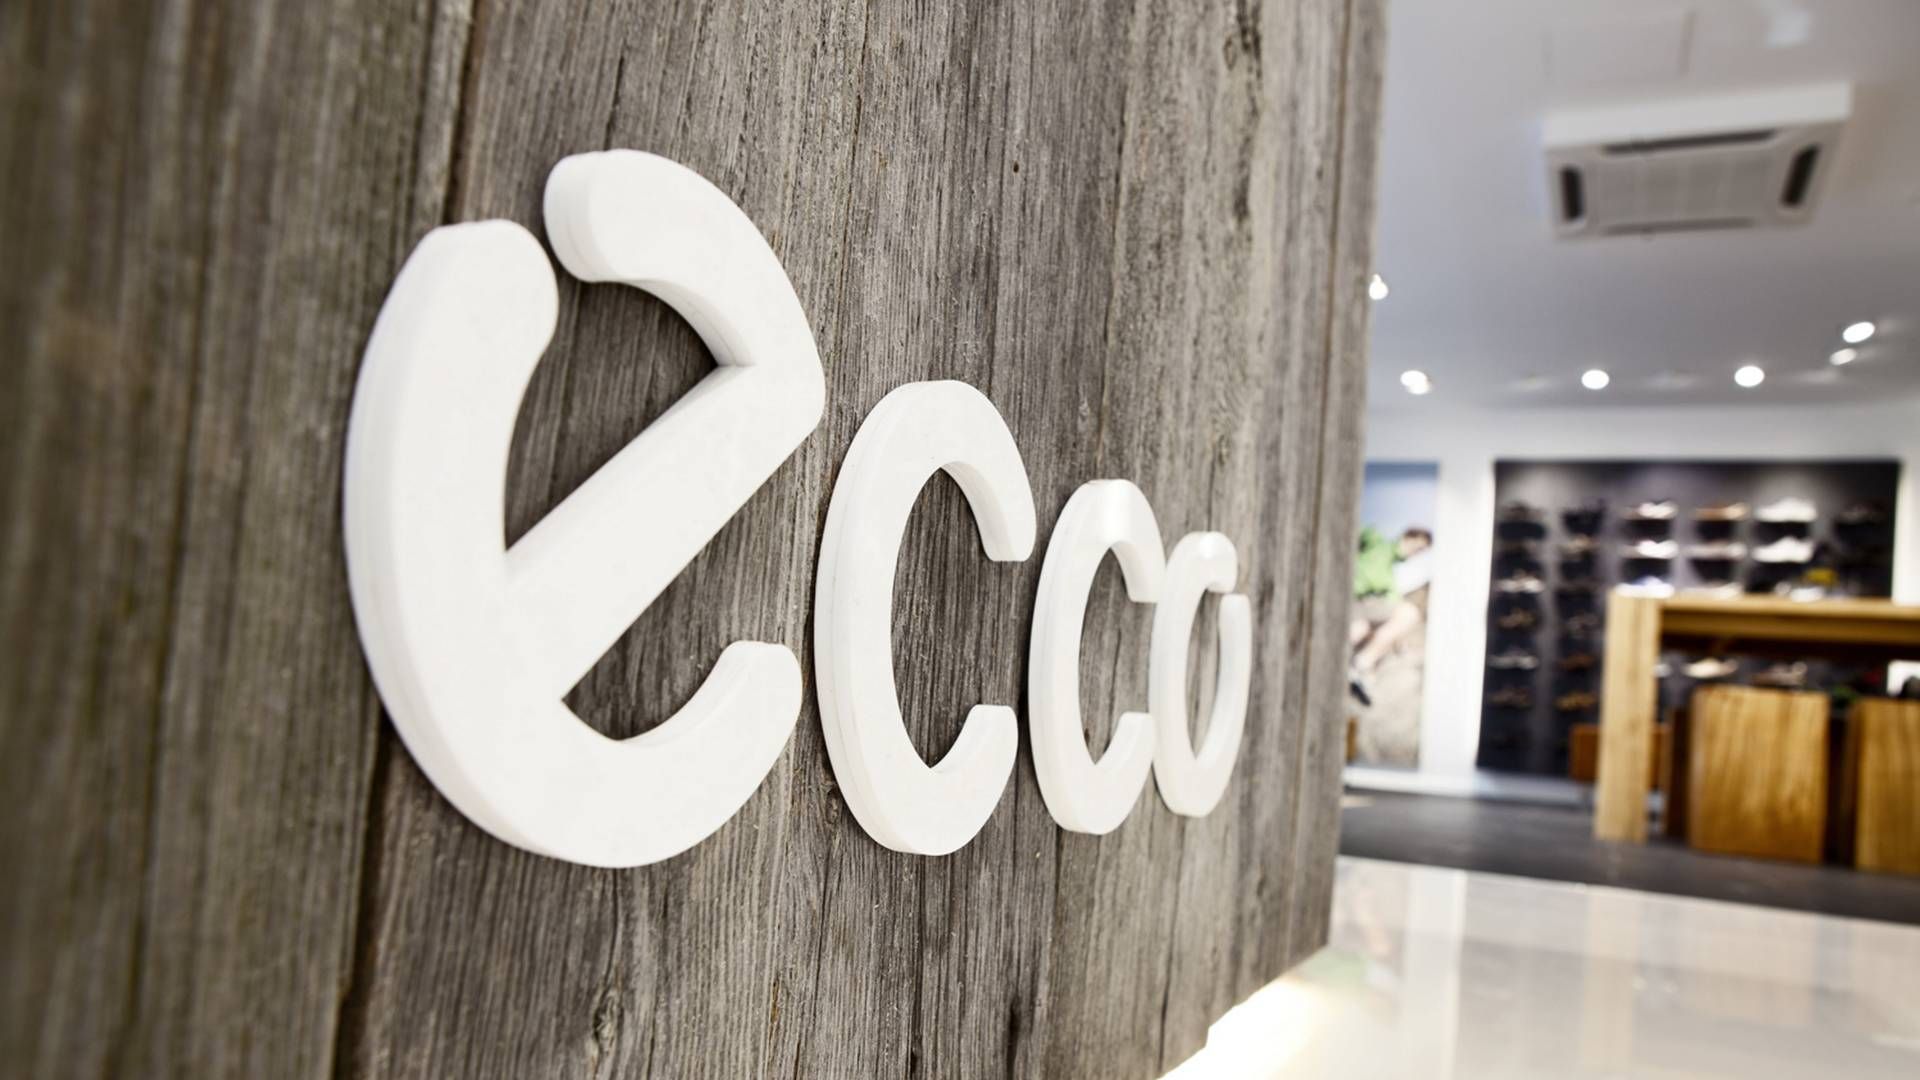 Ecco har valgt at blive i Rusland trods landets krig i Ukraine. Forklaringen har været, at man vil beskytte sine ansatte samt forhindre en mulig statslige overtagelse af aktiver. | Foto: PR / Ecco